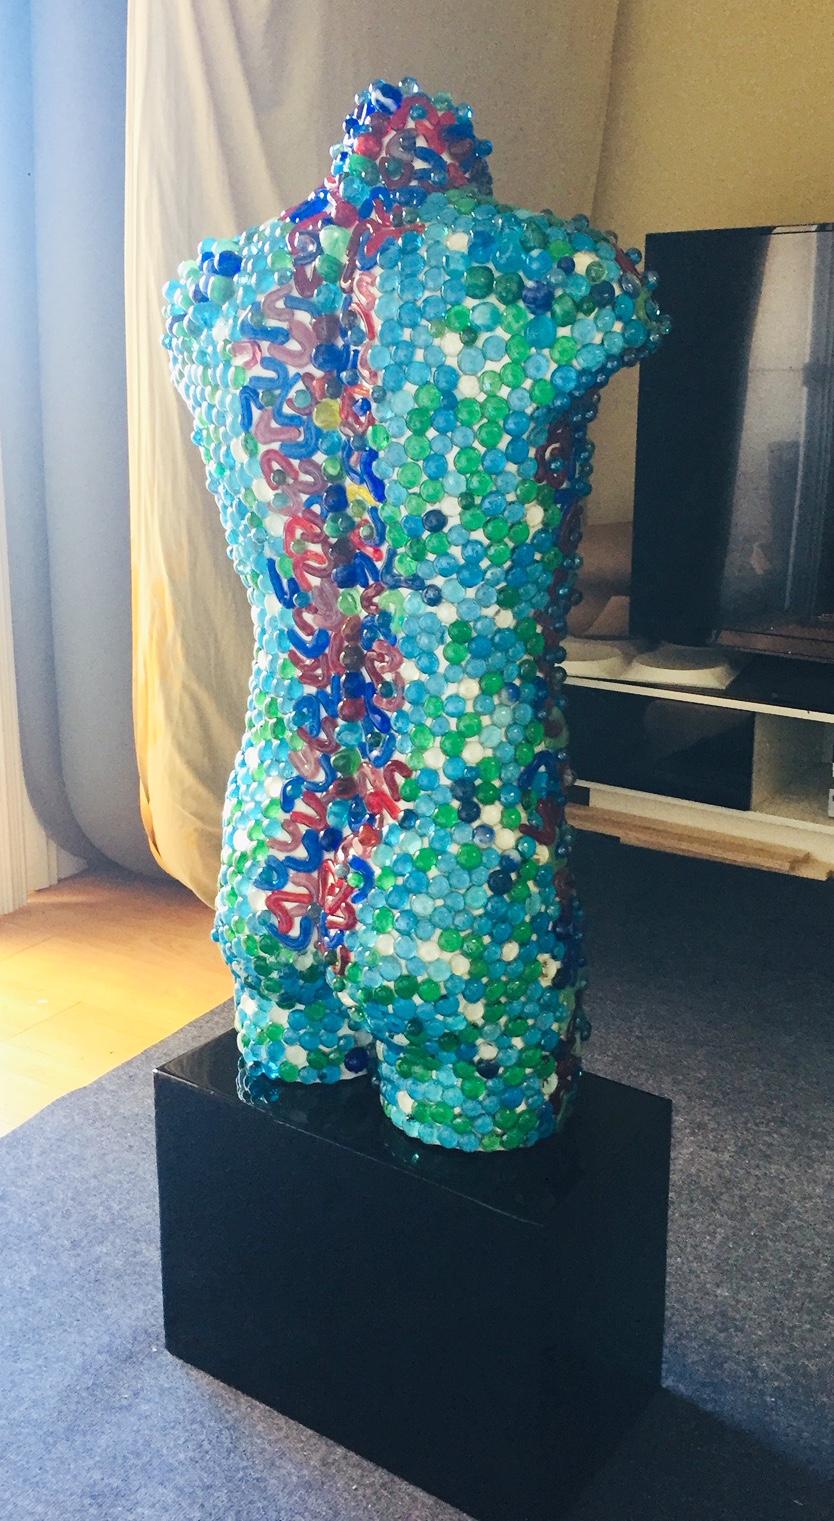 Buste masculin unique en son genre, en fibre de verre, composé de centaines de verres de Murano et d'autres formes et couleurs, recouverts de résine, ainsi que d'un support noir fait sur mesure.
Mesures : Hauteur : 50 pouces / largeur : 22 pouces /